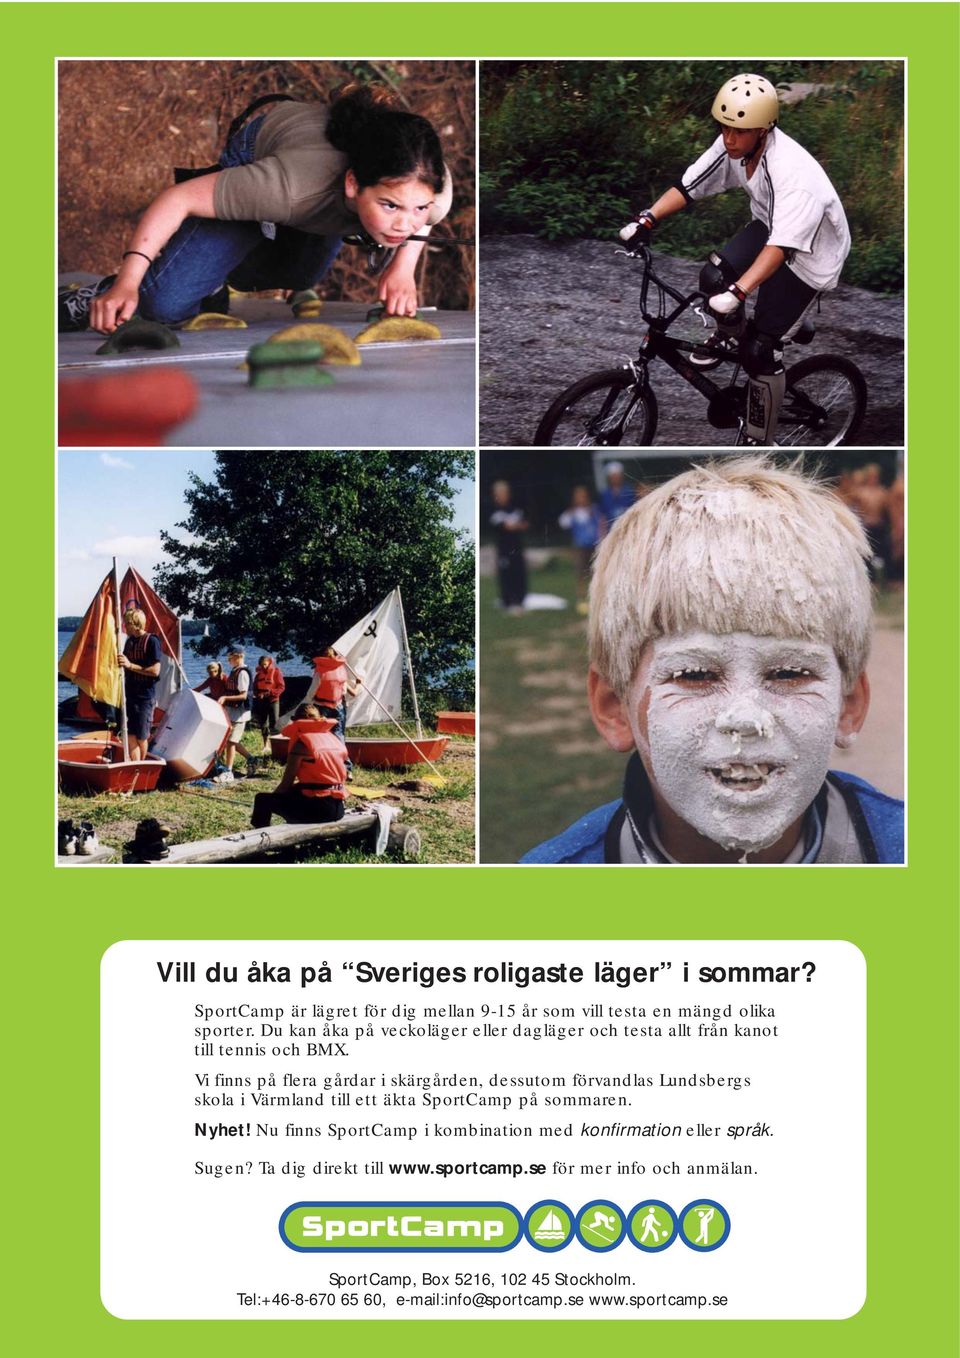 Vi finns på flera gårdar i skärgården, dessutom förvandlas Lundsbergs skola i Värmland till ett äkta SportCamp på sommaren. Nyhet!